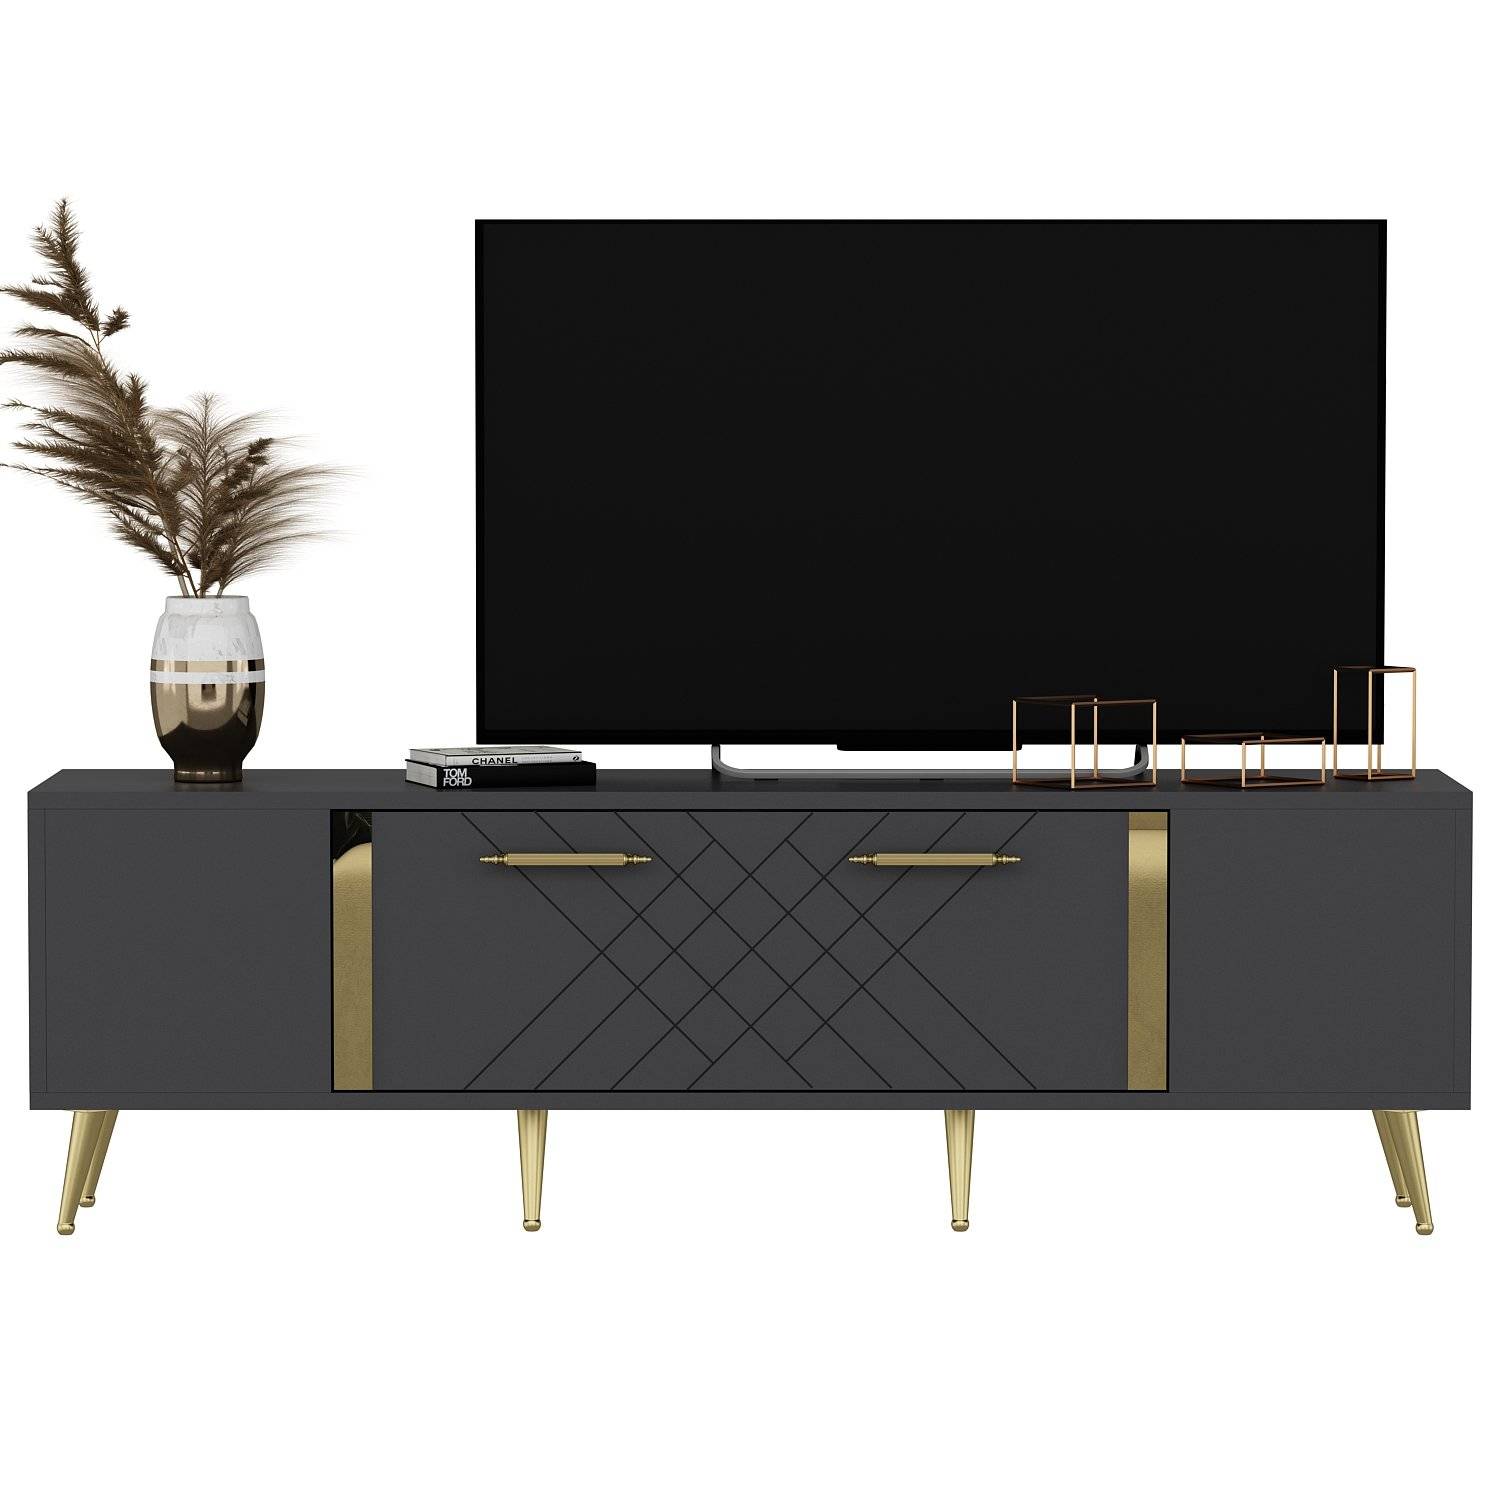 Bourgondisch TV-meubel 150cm Antraciet en Goud